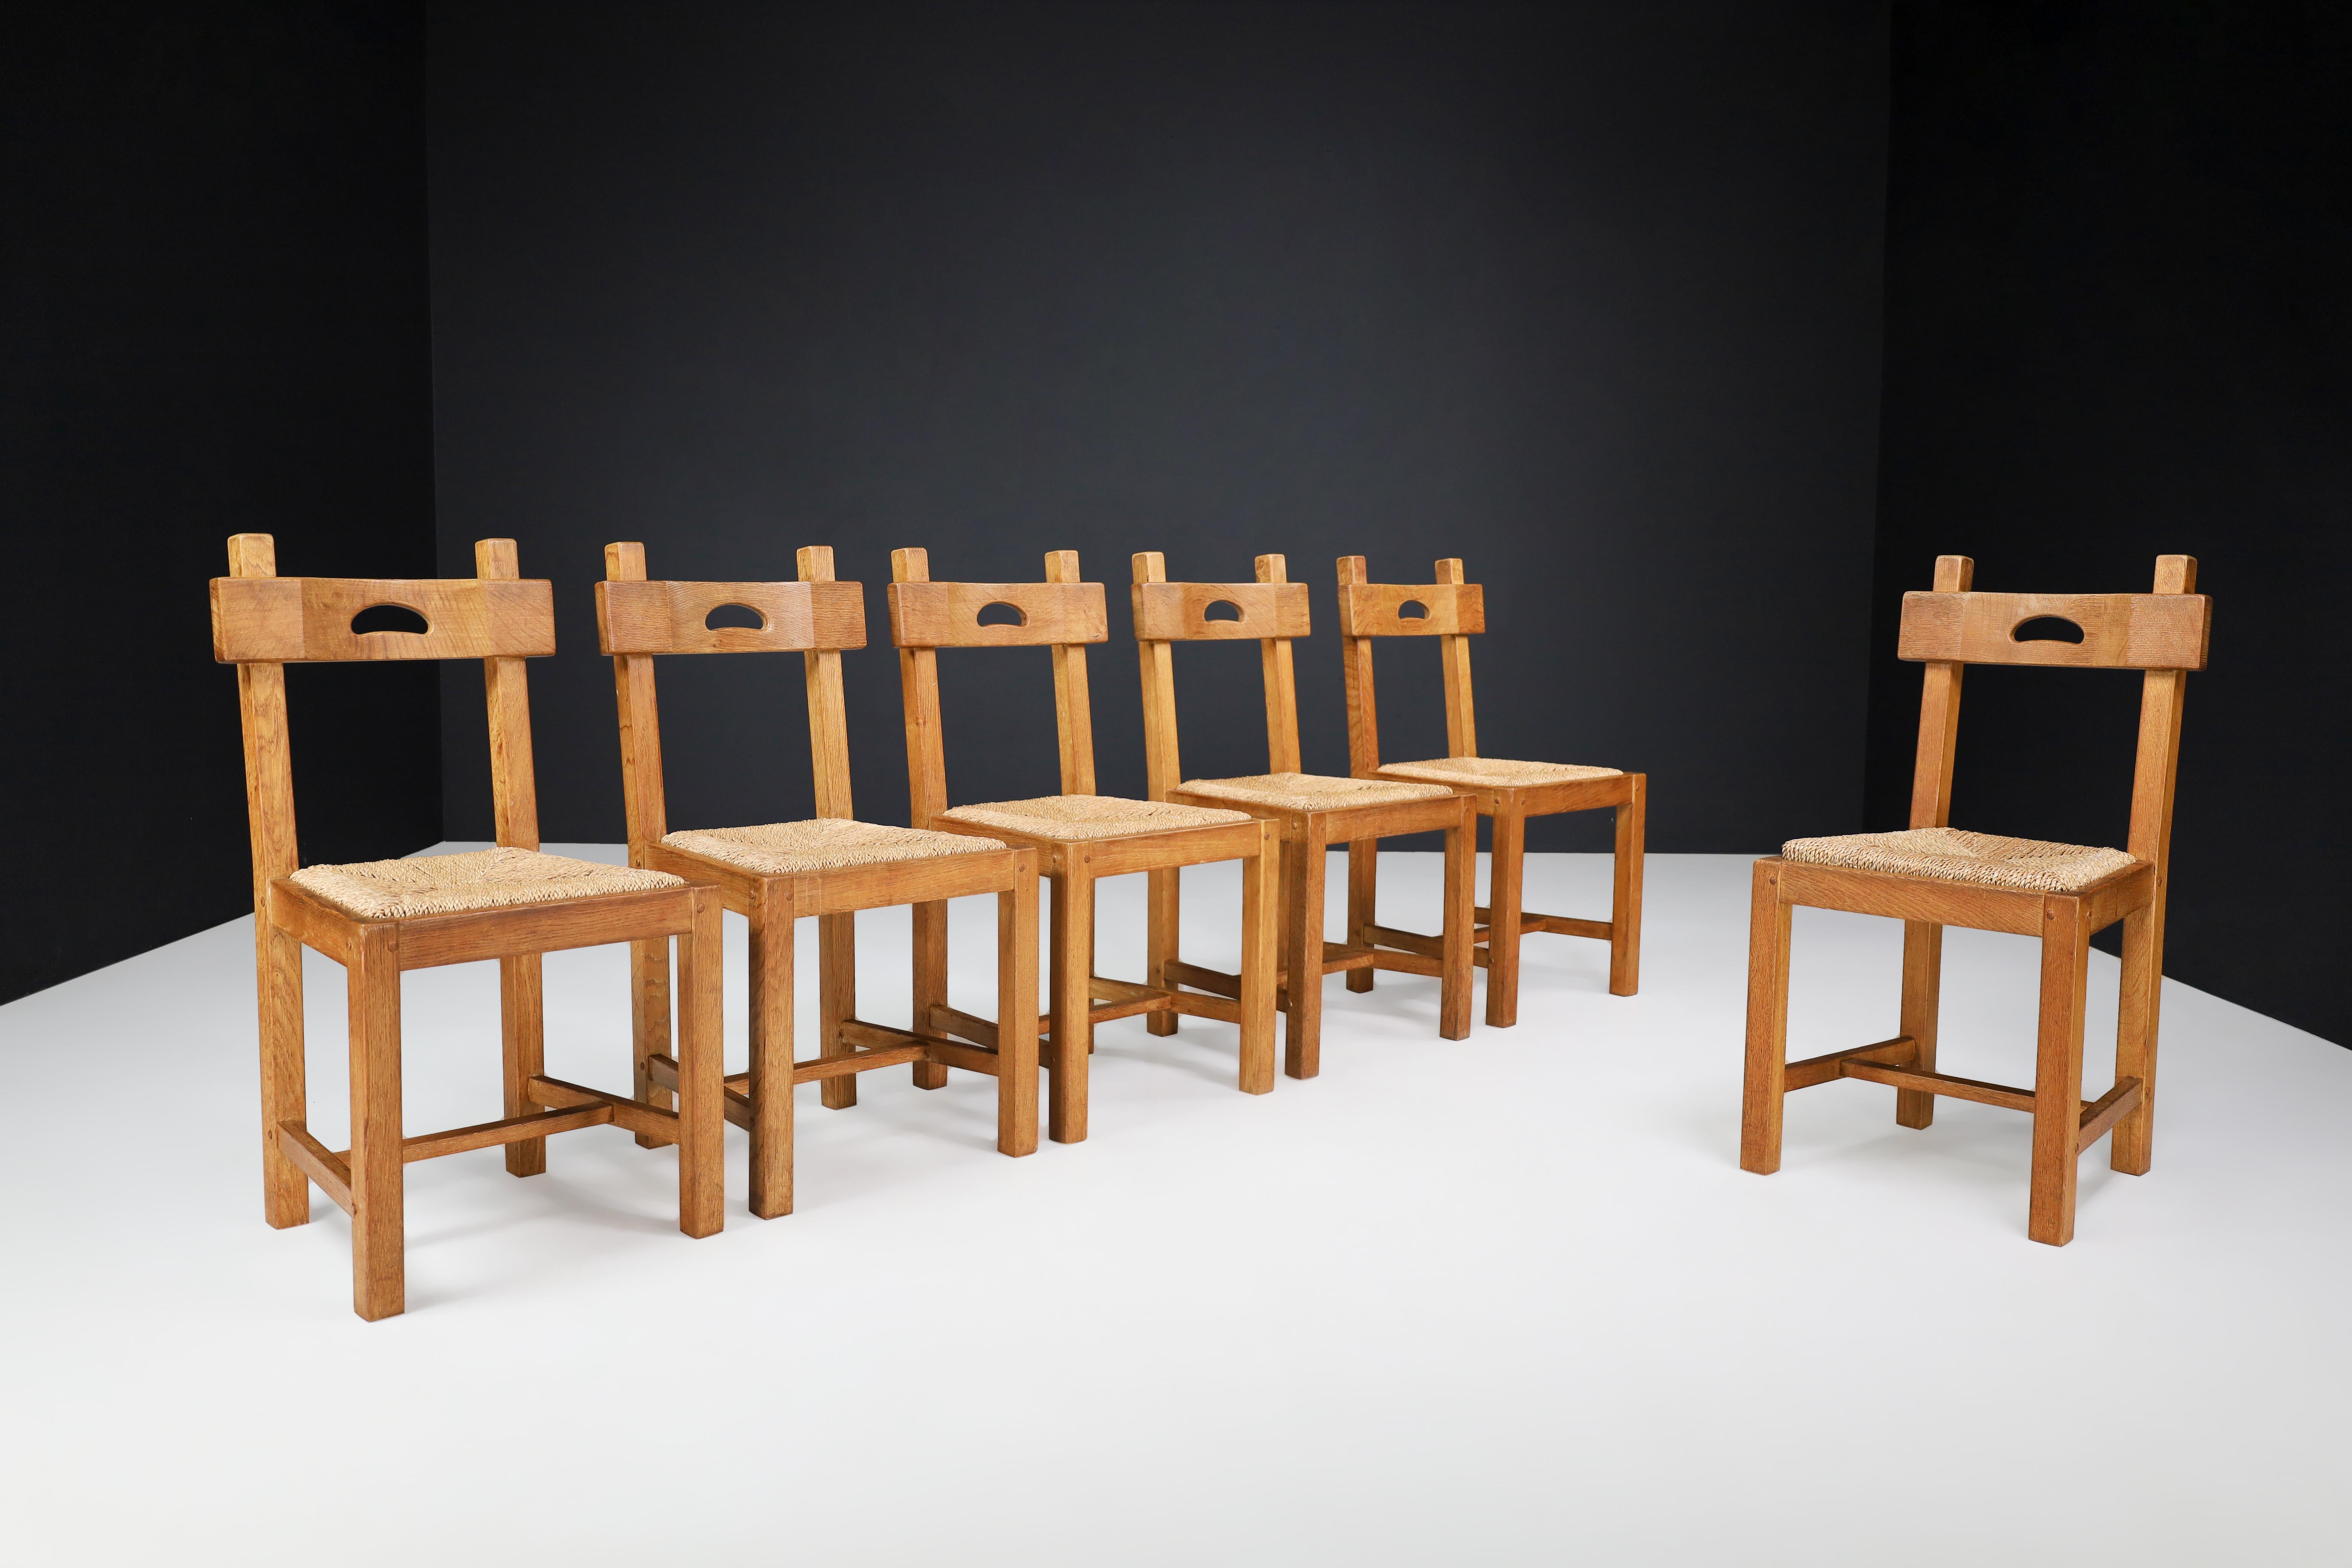 Chaises de salle à manger butraliste en chêne et jonc, France, années 1960

Cet ensemble de six chaises de salle à manger françaises, fabriquées en bois de chêne et en jonc dans les années 1960, présente une couleur chaude et riche qui s'est patinée